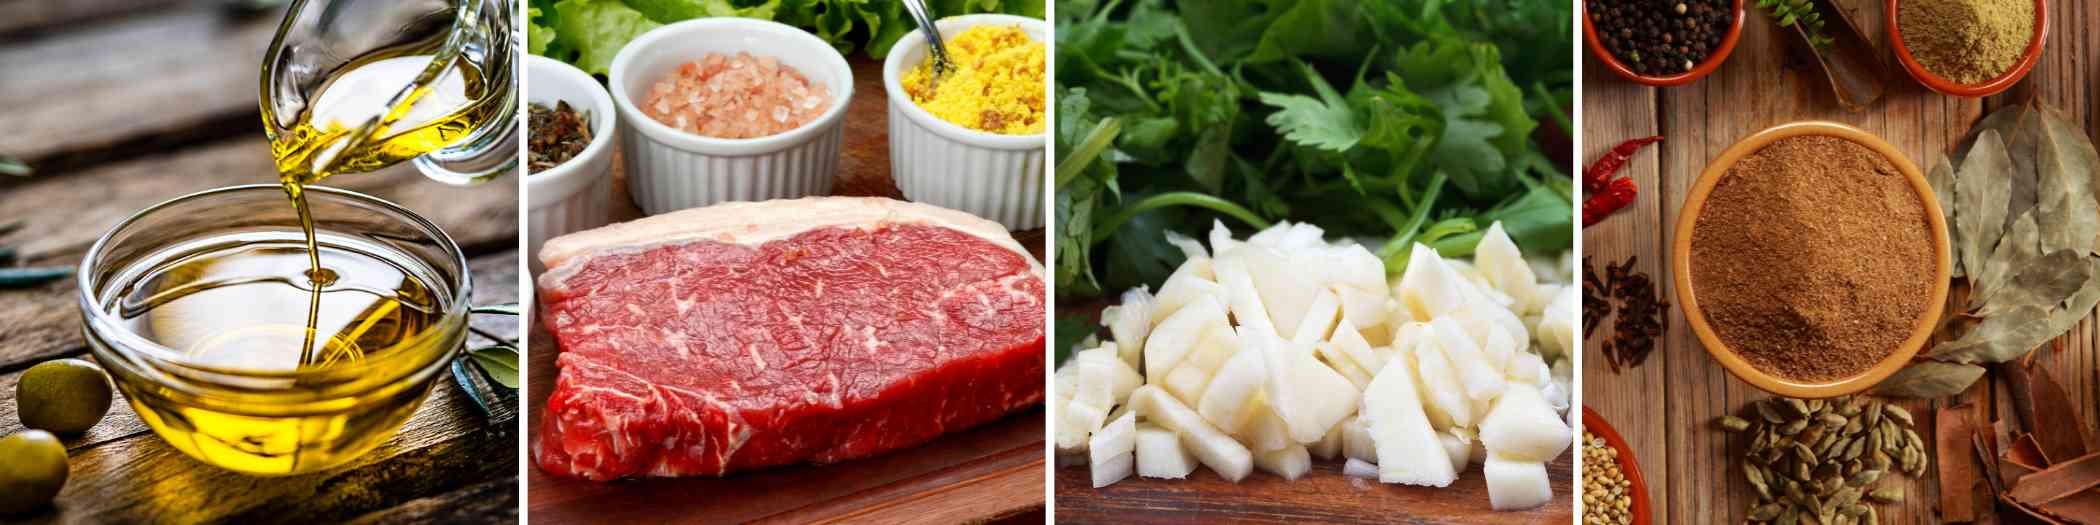 Sirloin Steak Bites Ingredients